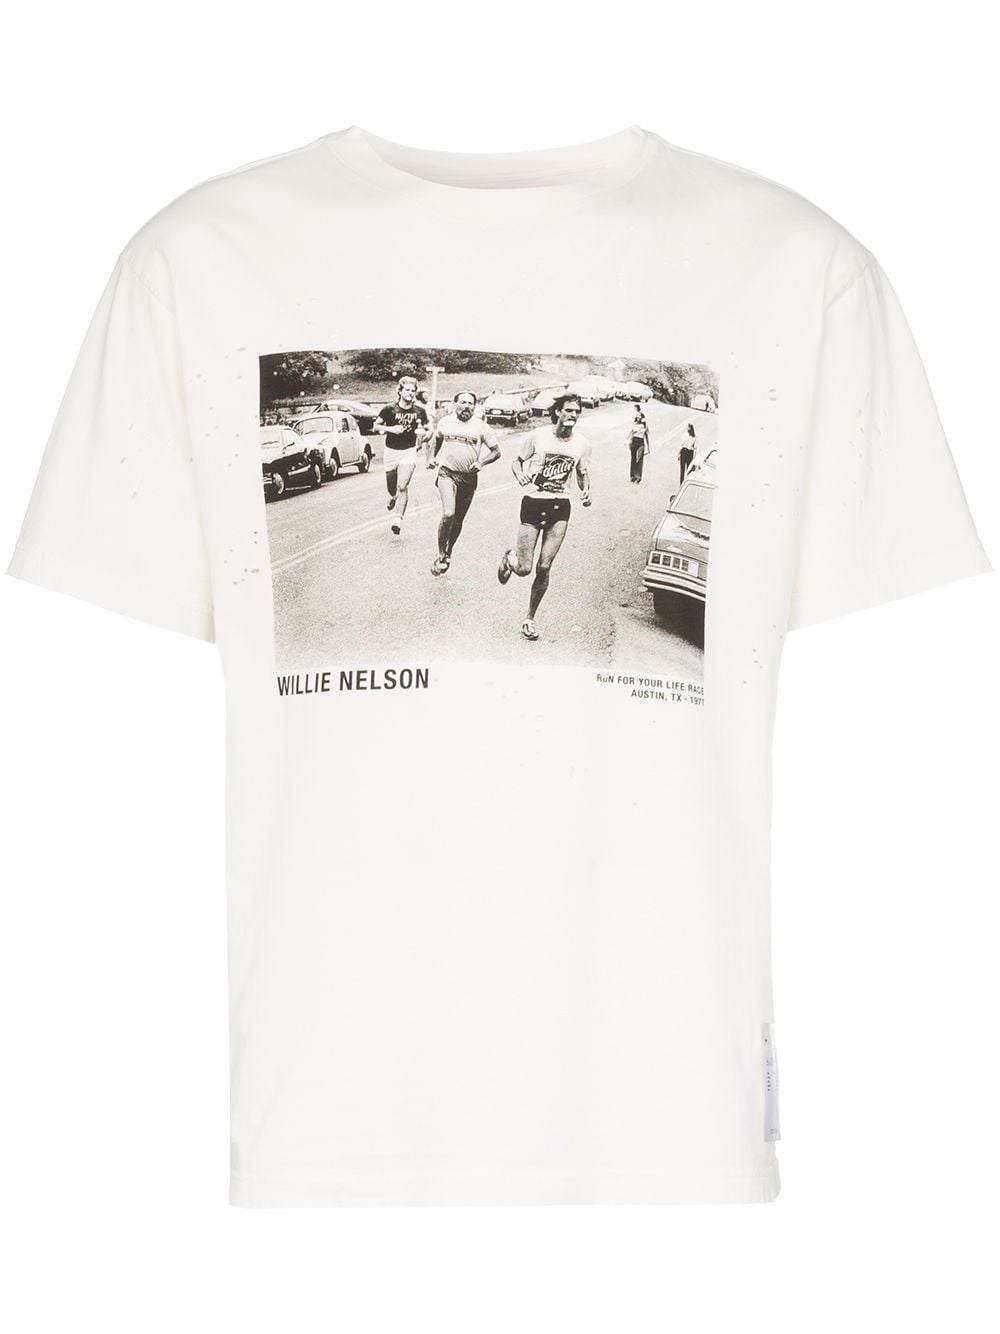 фото Satisfy футболка Willie Nelson с винтажным эффектом